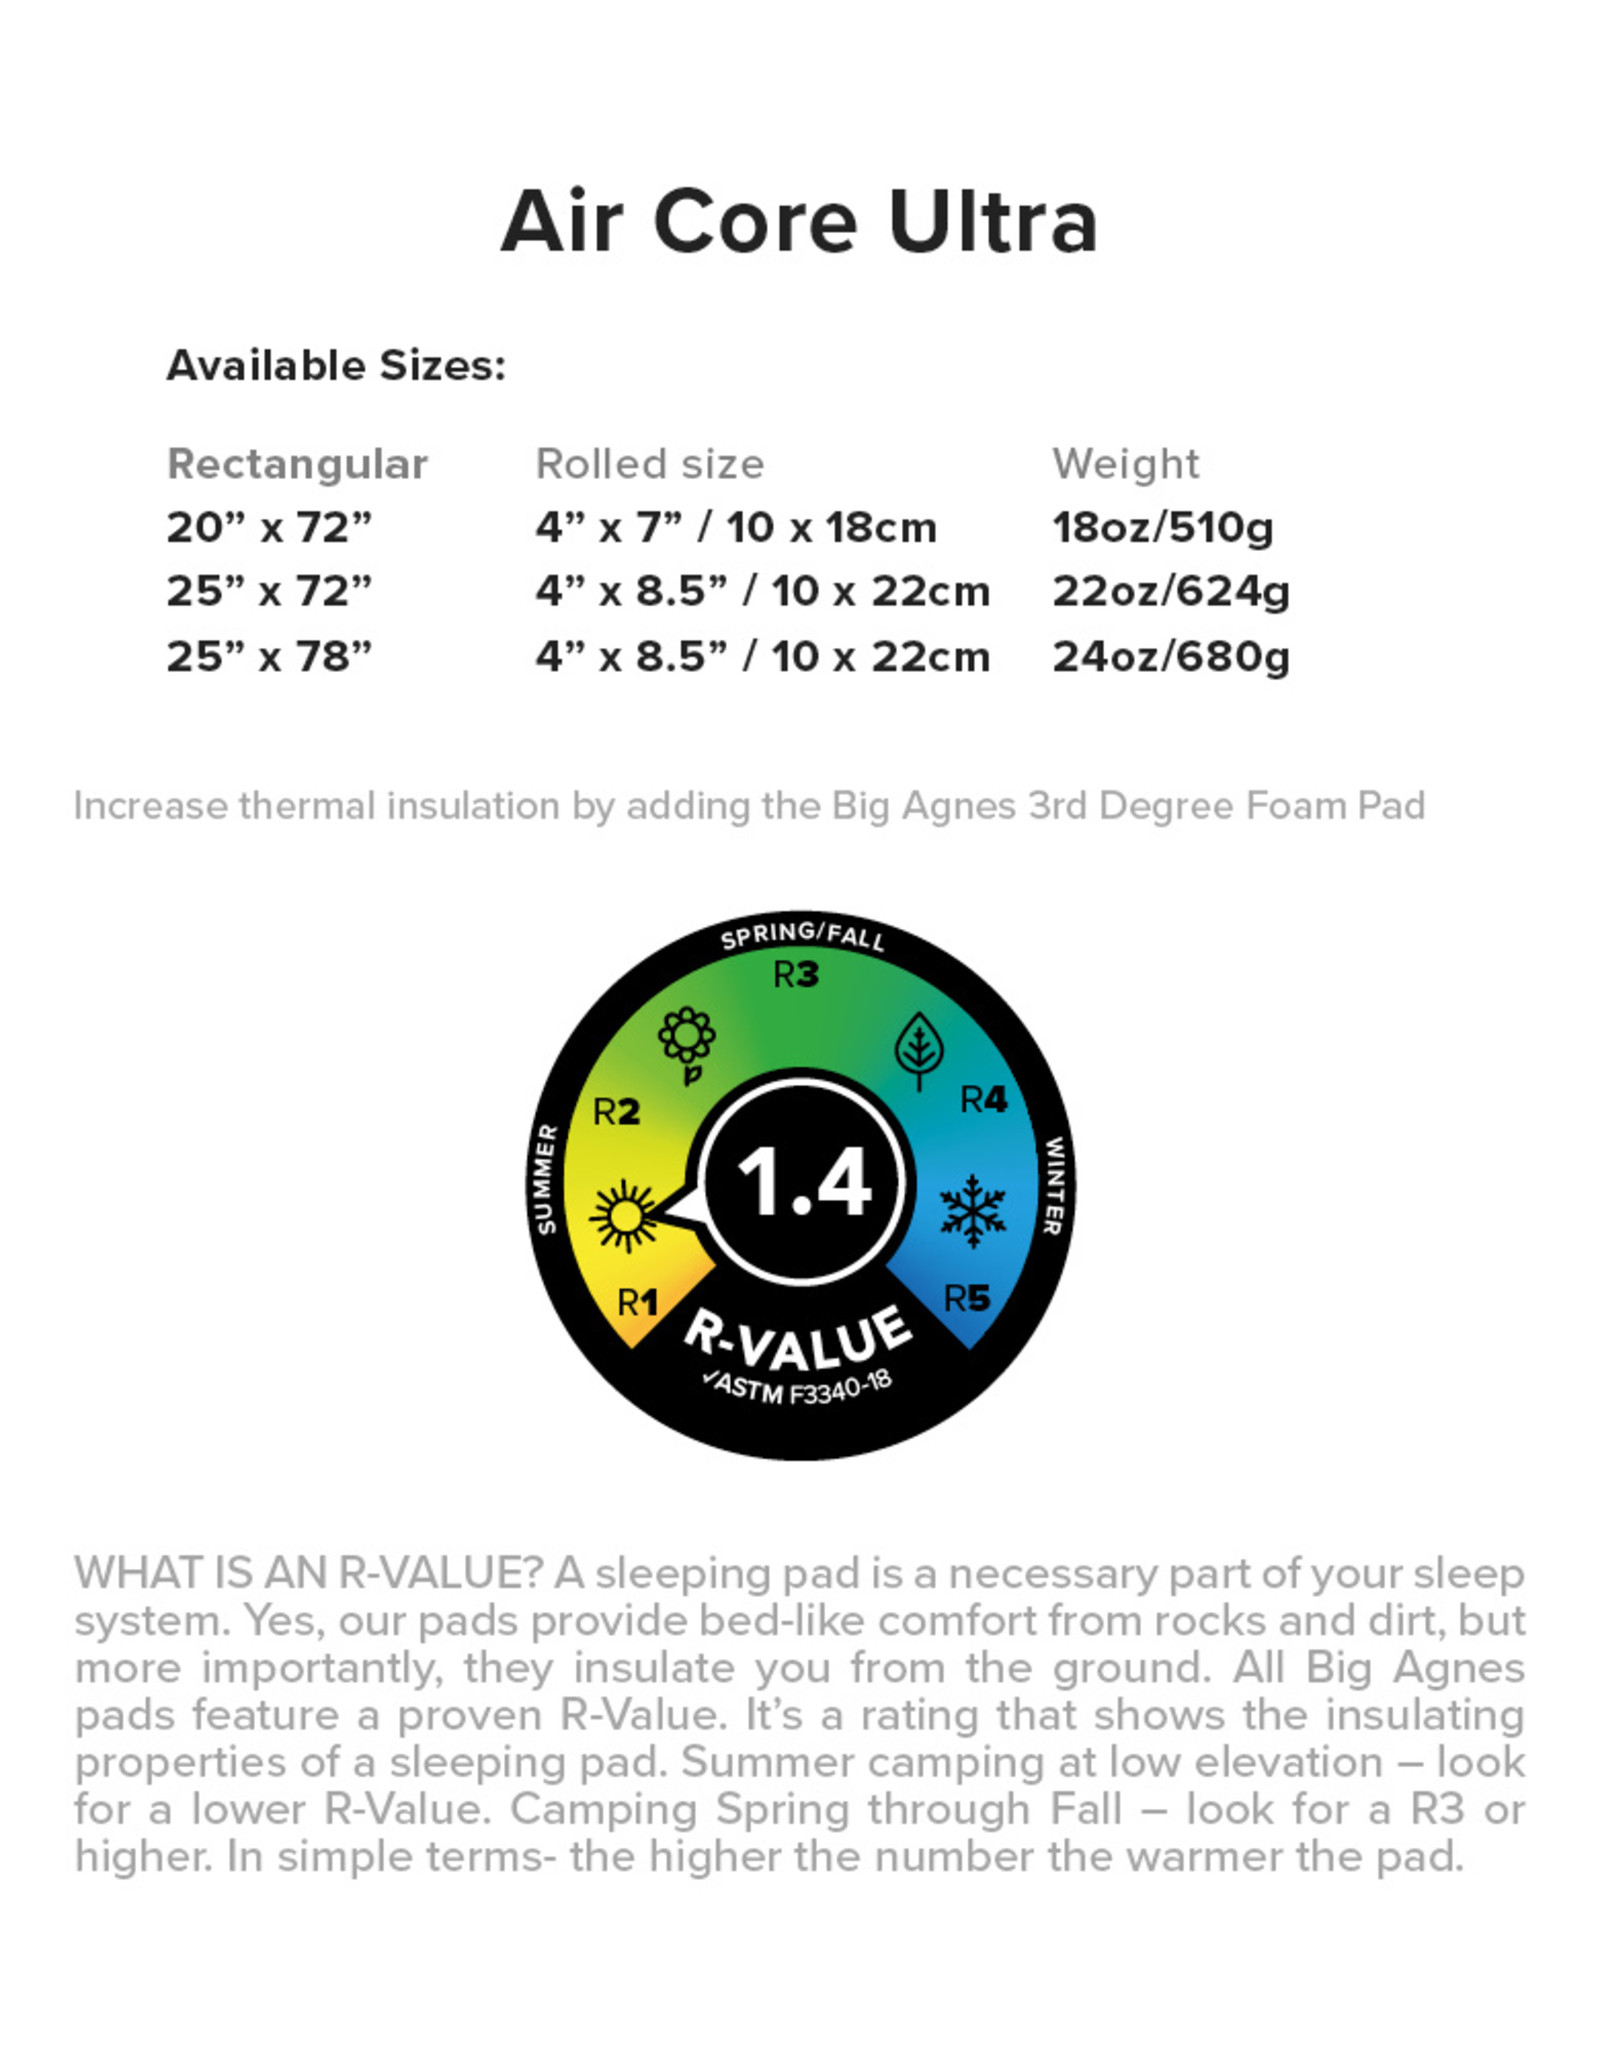 Big Agnes Air Core Ultra 20x72 REGULAR